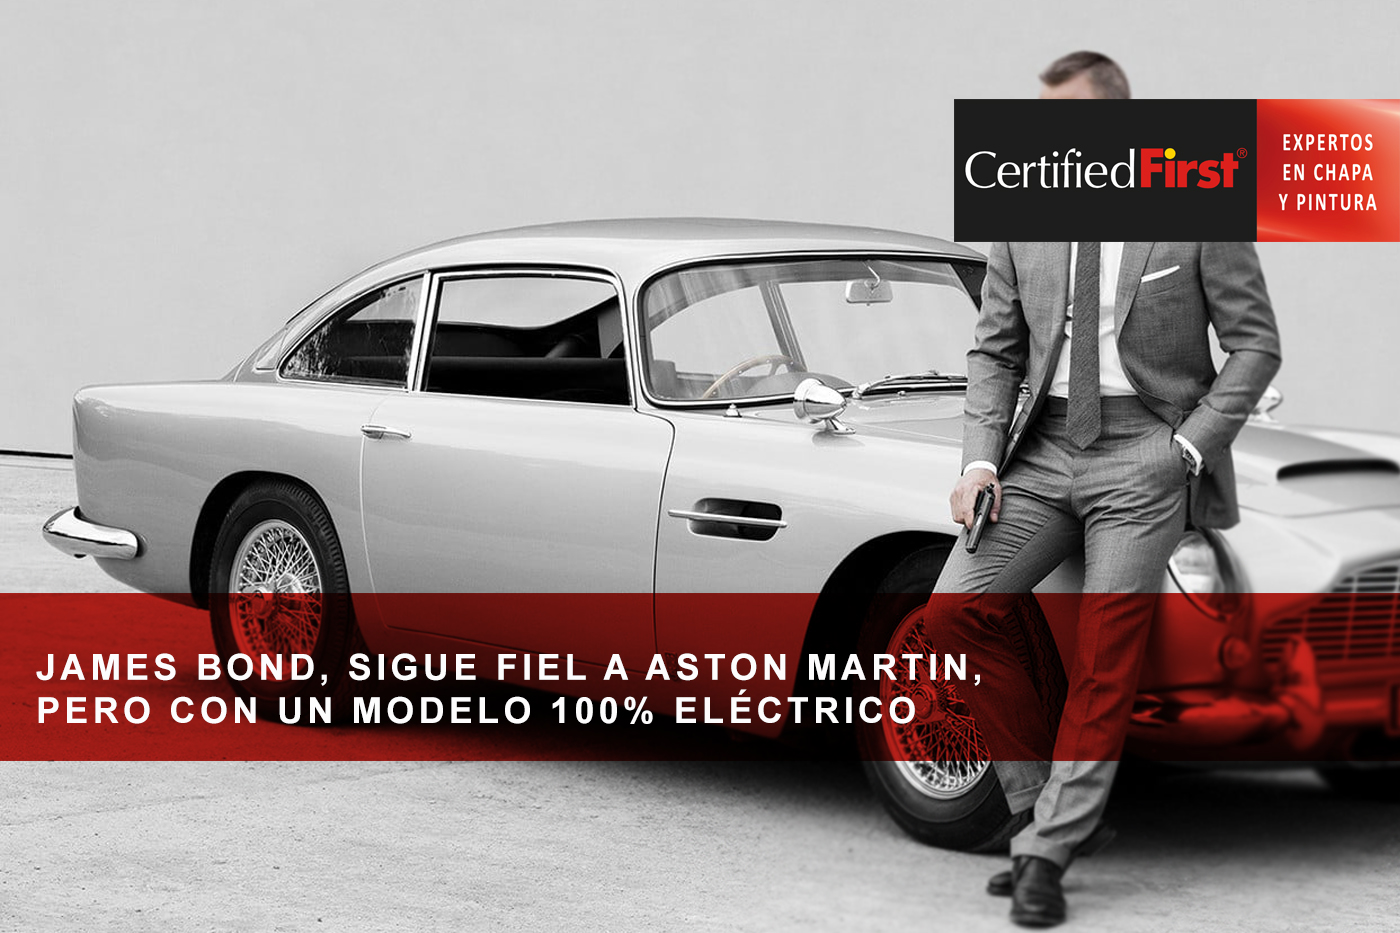 James Bond, sigue fiel a Aston Martin, pero con un modelo 100% eléctrico